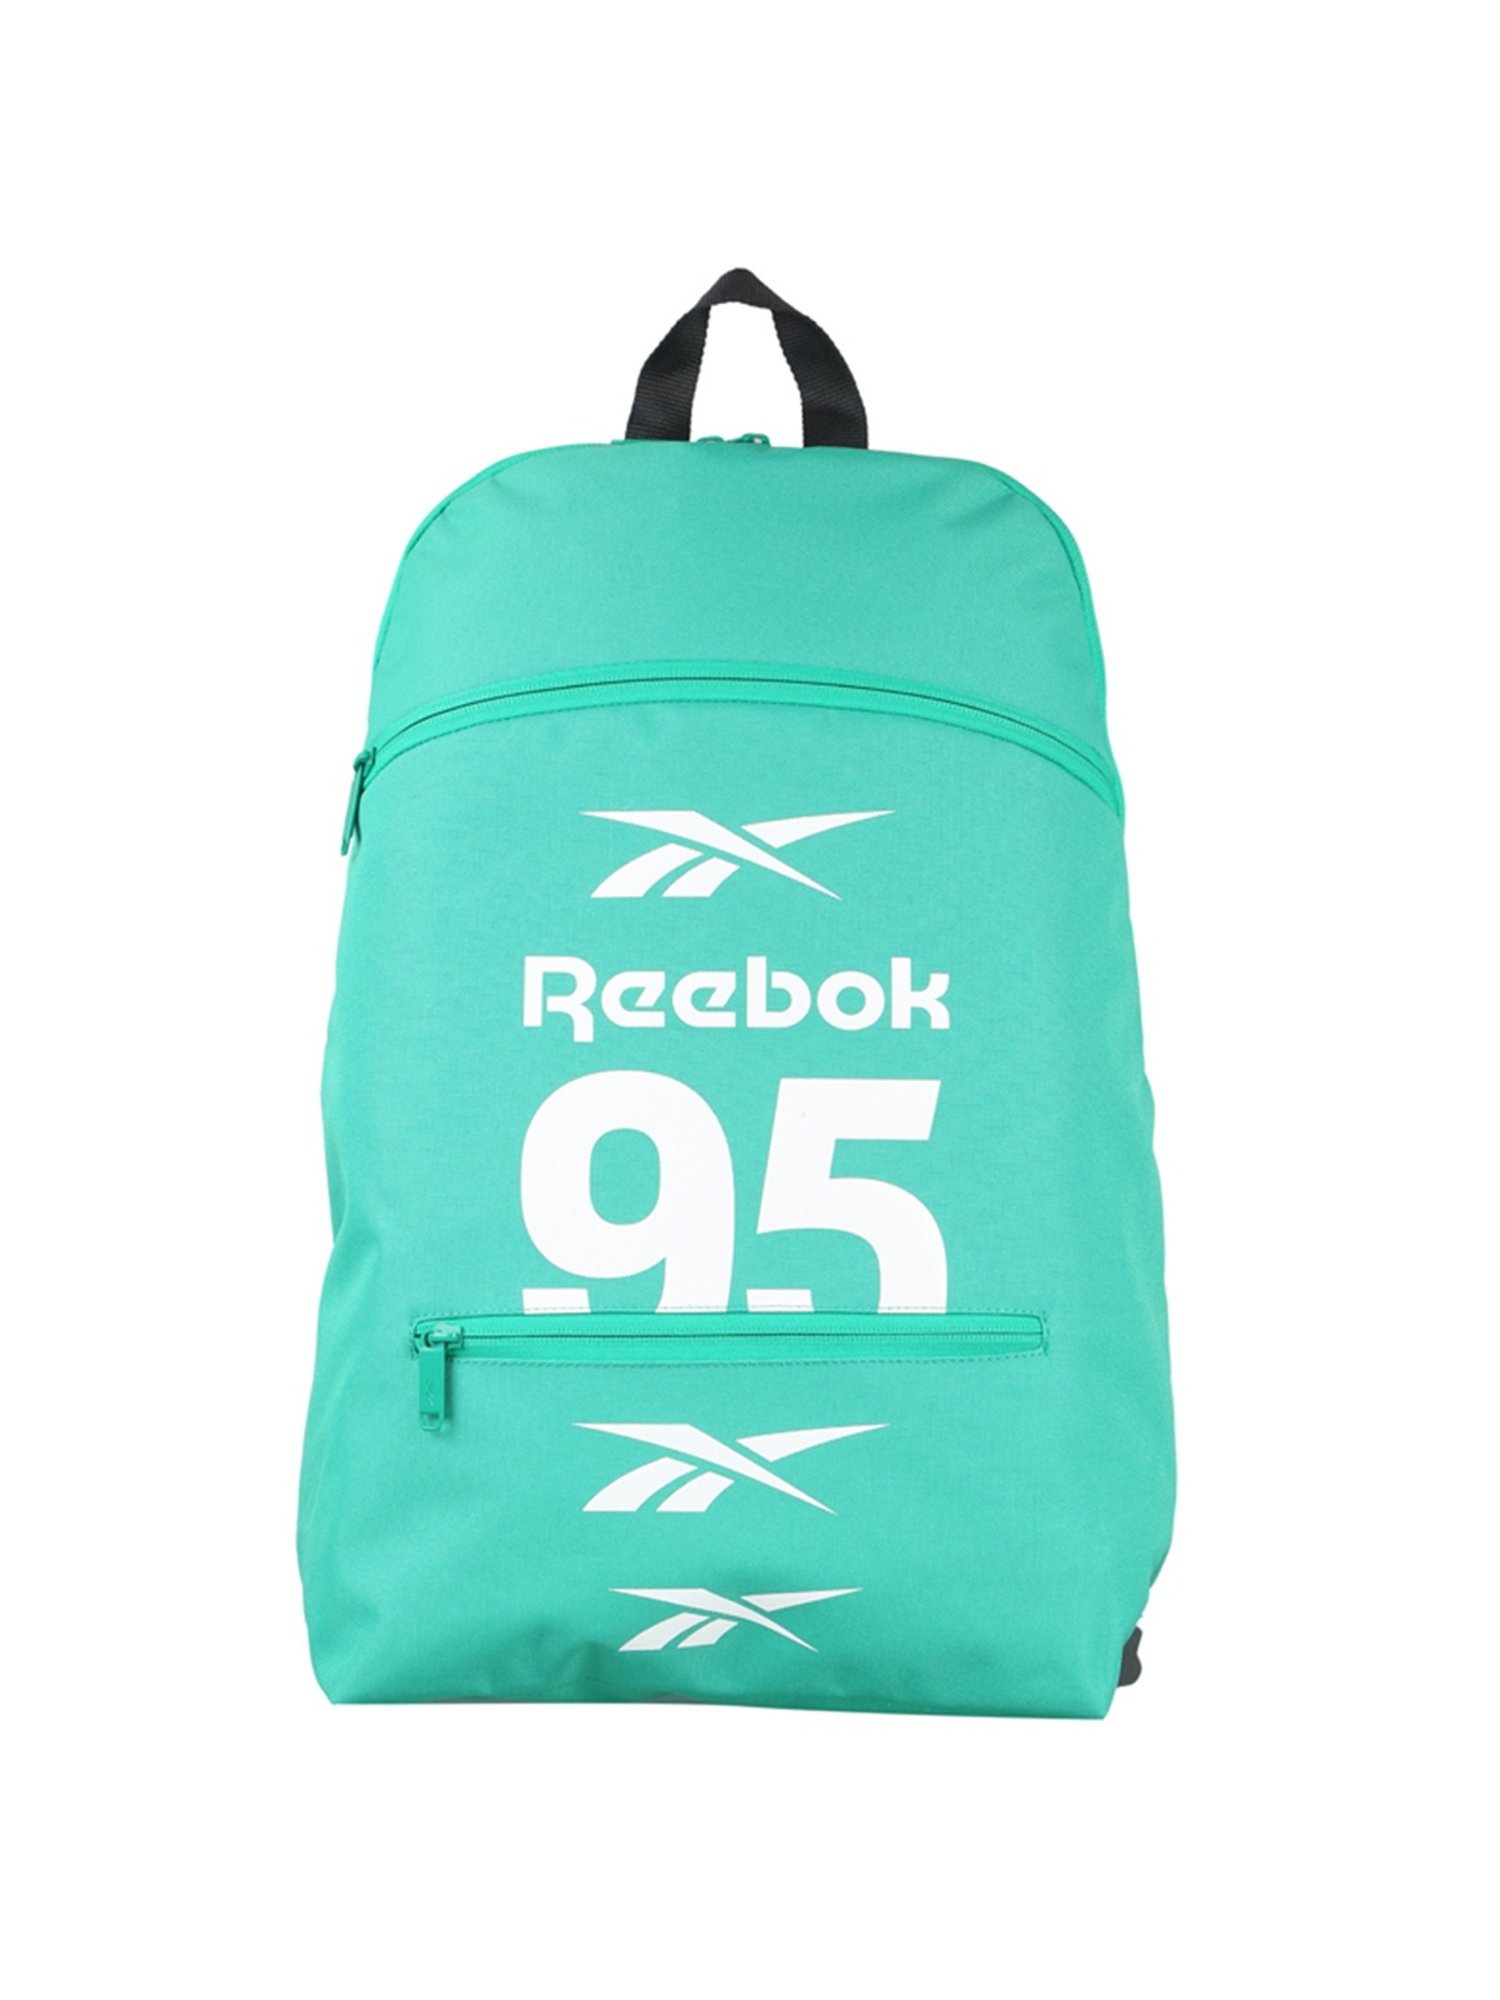 Vintage Reebok Black Backpack School Bag Book Bag College Bag Reebok aa12 |  eBay